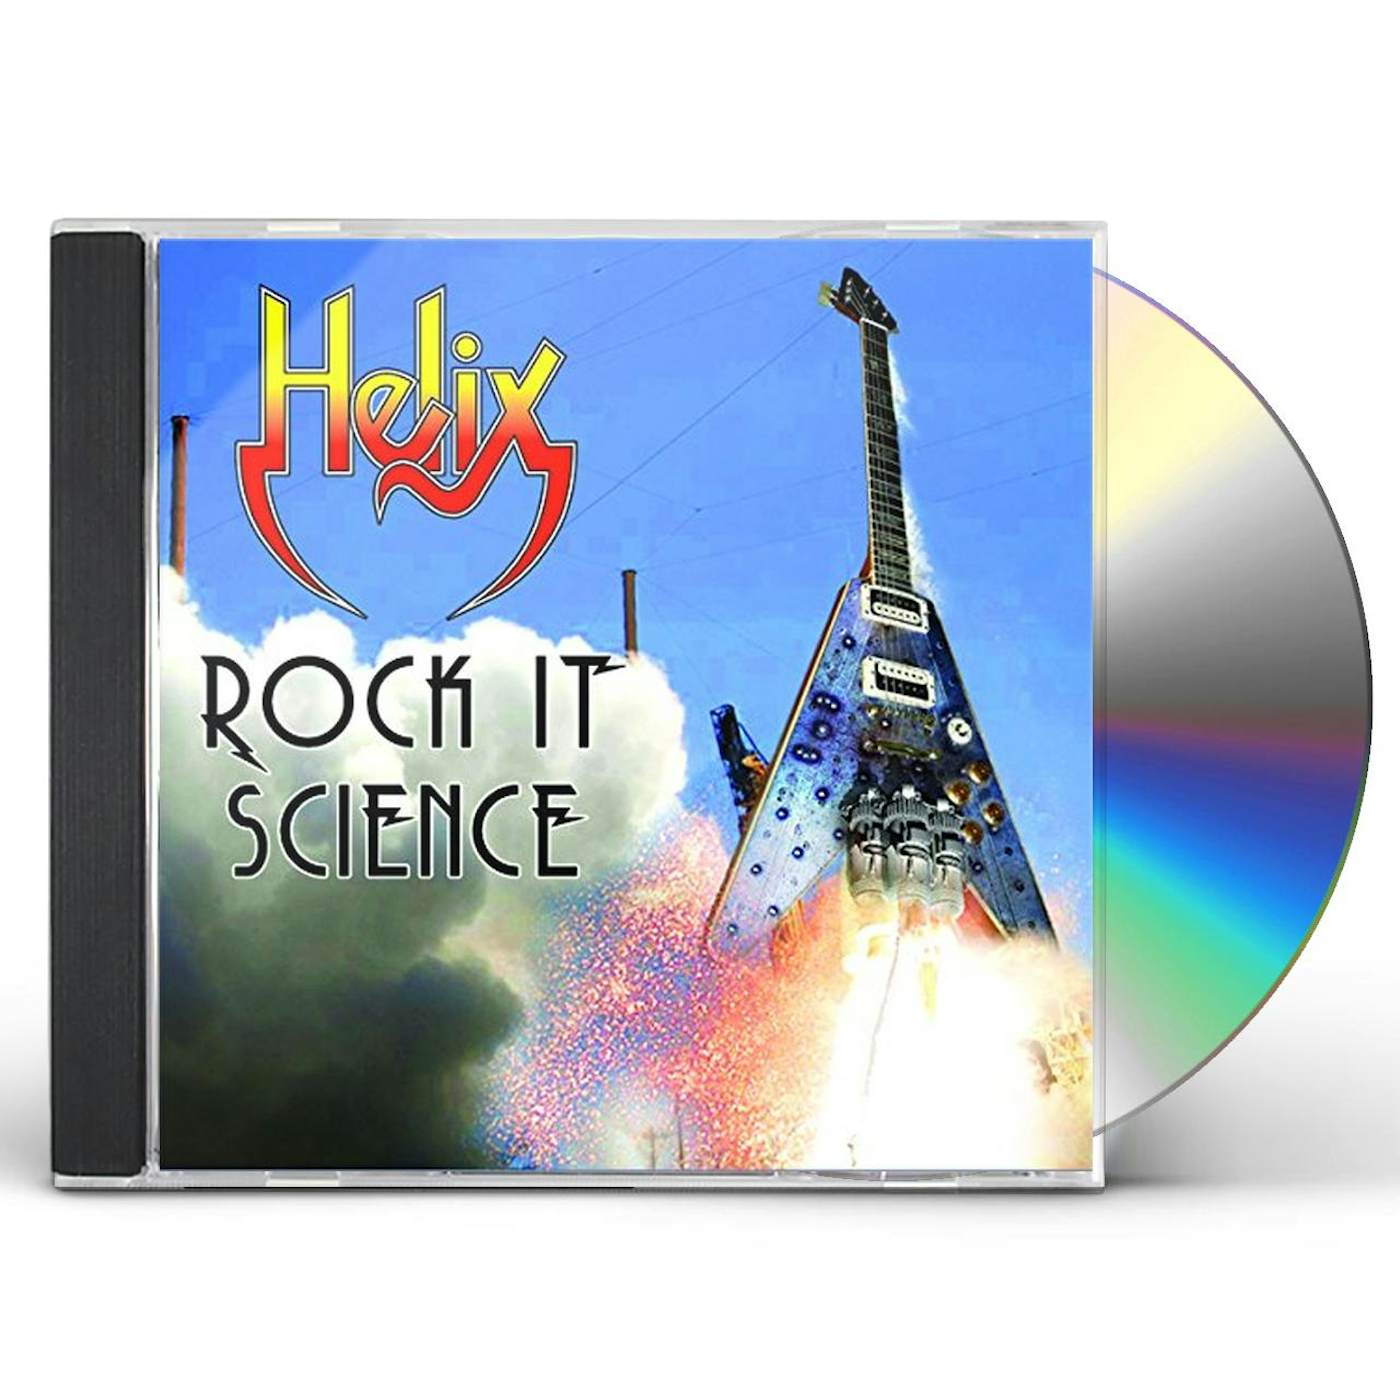 Helix ROCK IT SCIENCE CD